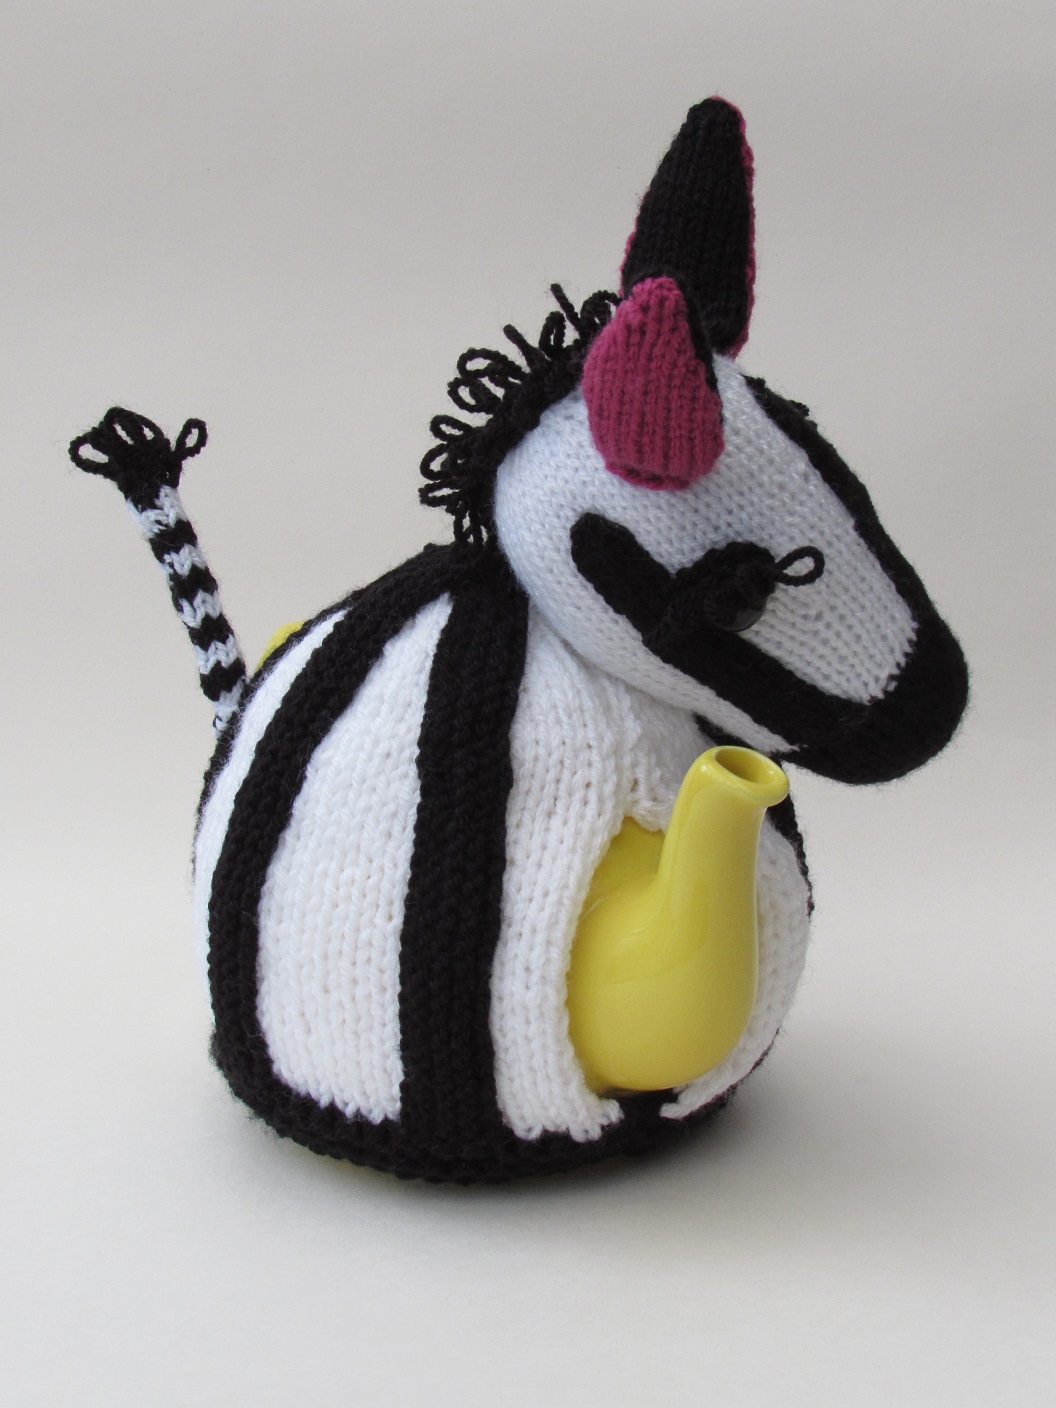 Zebra knitting pattern